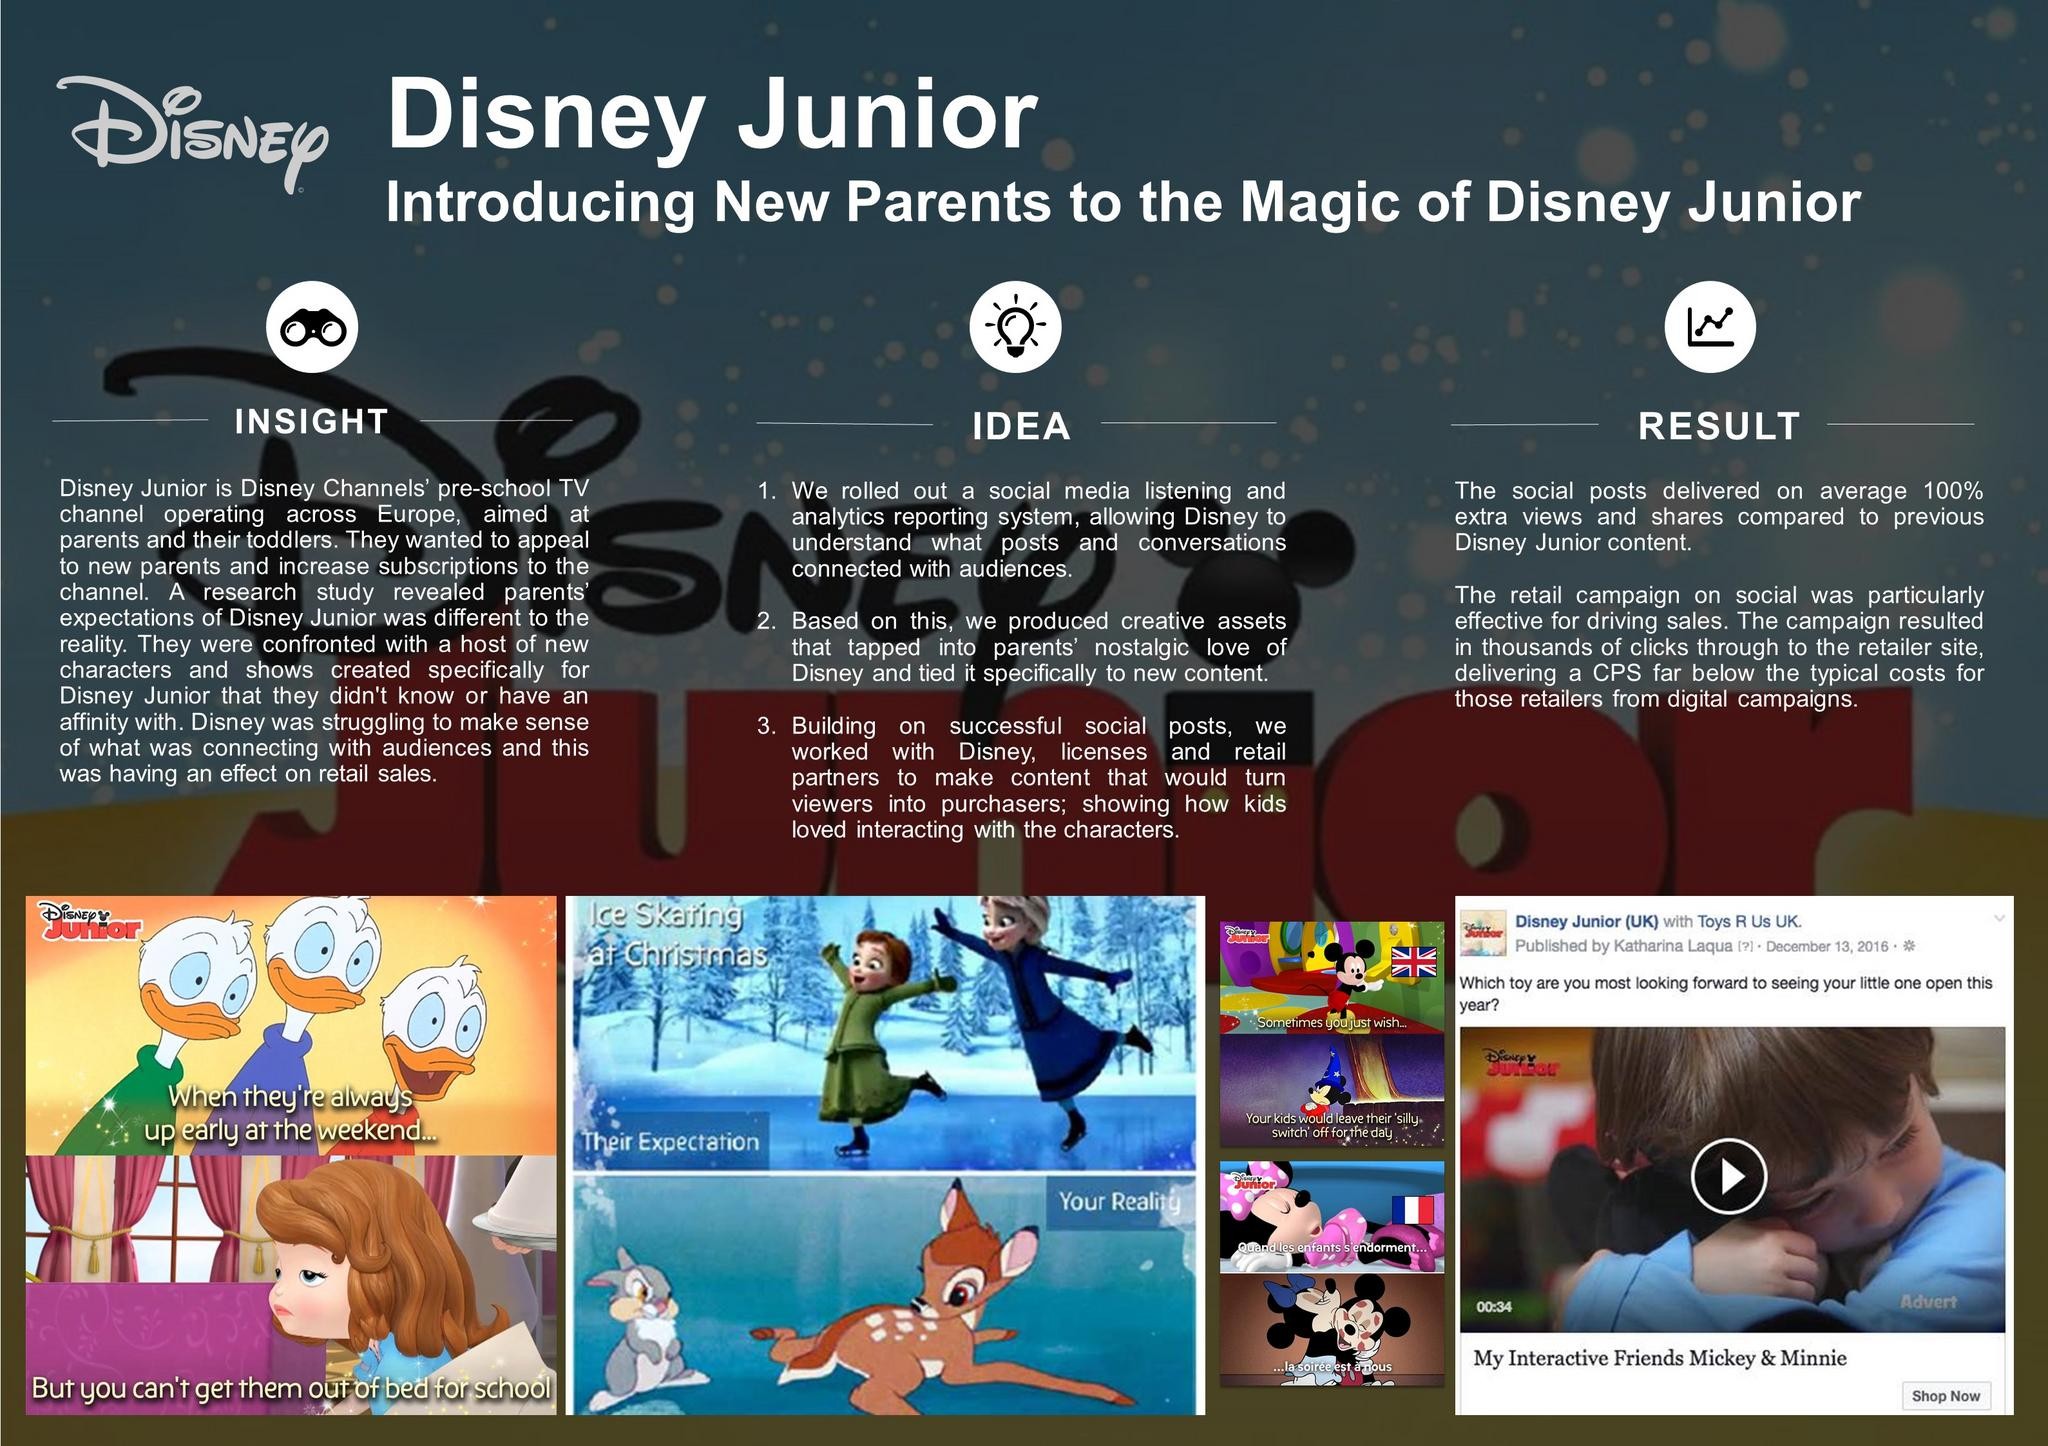 Disney Junior: Introducing New Parents to the Magic of Disney Junior